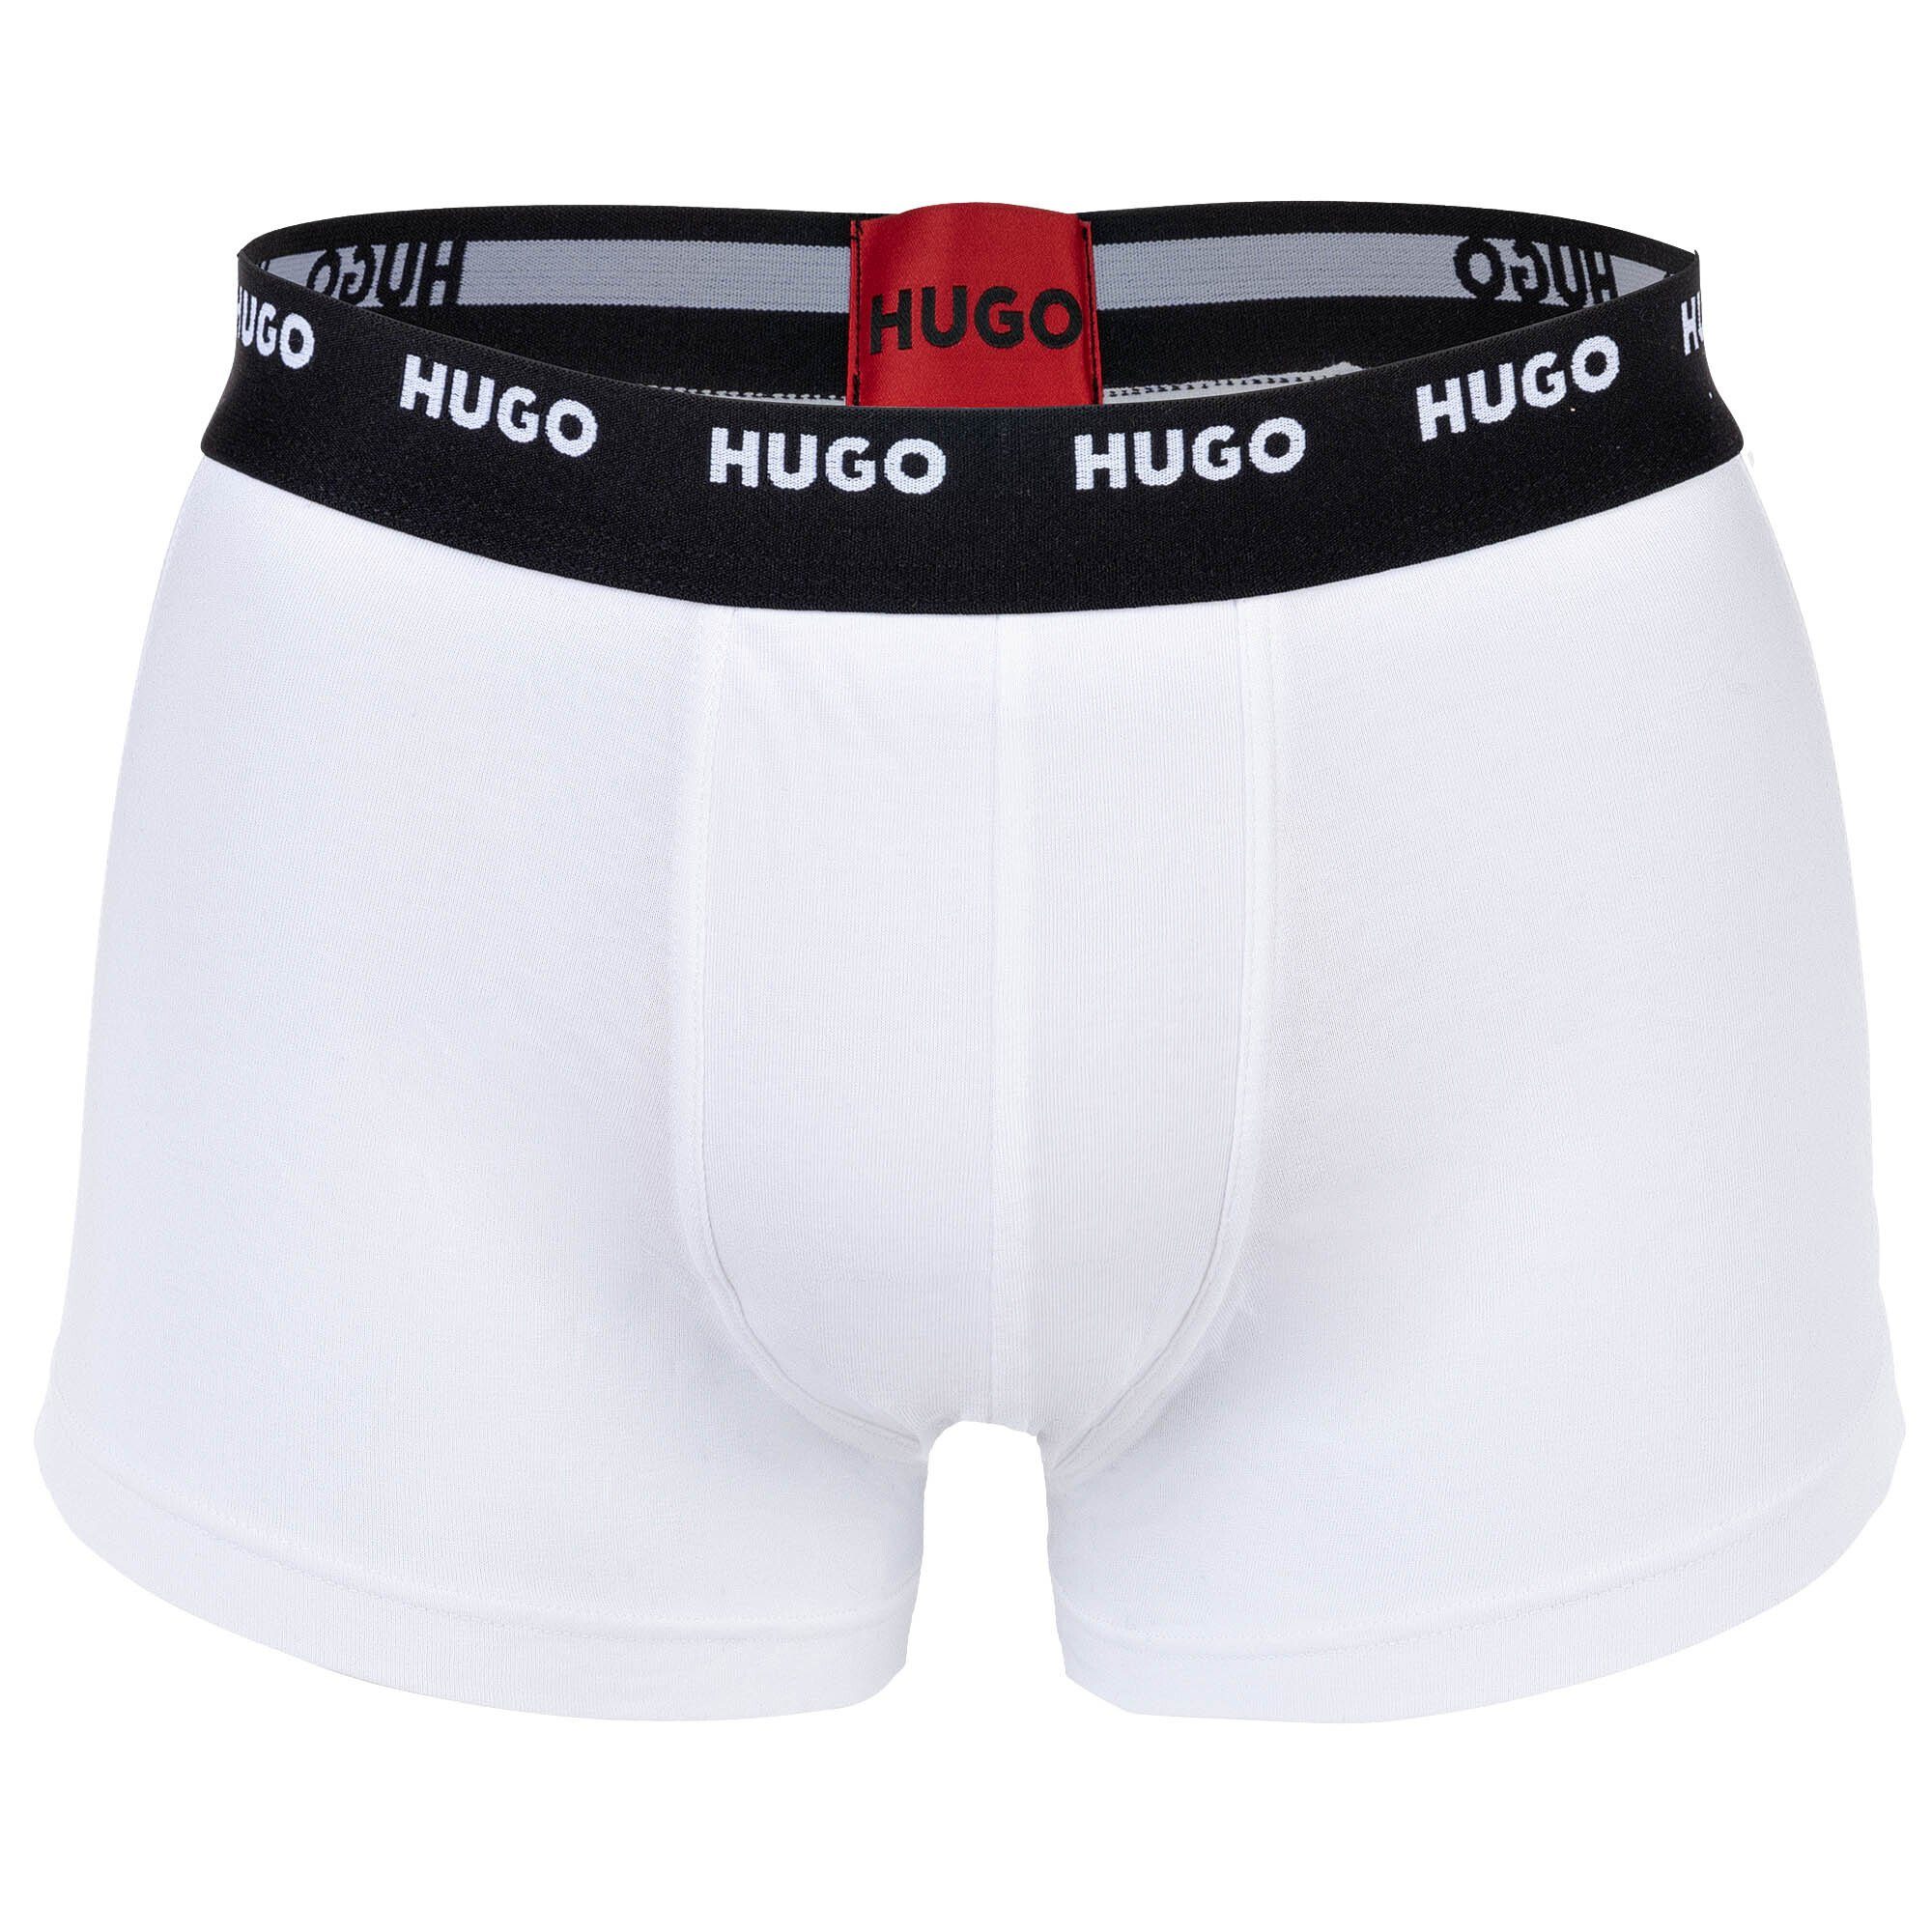 Trunks 5er HUGO Herren - Shorts, Pack Pack Five Schwarz/Rot/Weiß Boxer Boxer